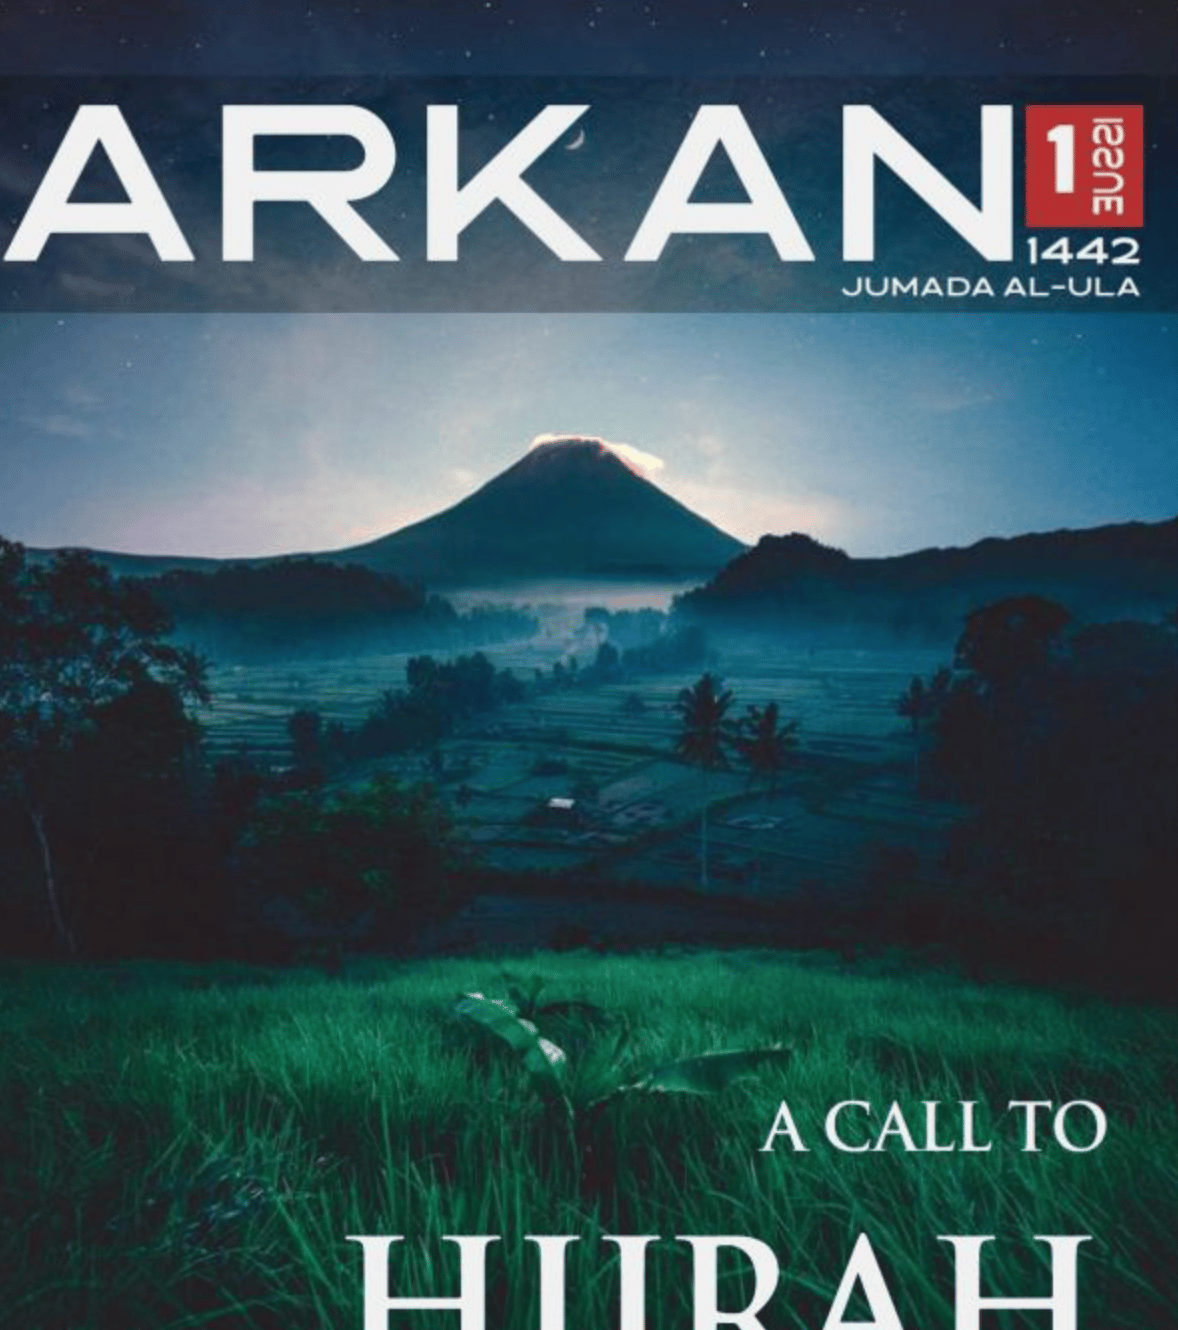 Arrukn Media Center (Islamic State Arakan / Katibat al-Mahdi Fi Bilad Arakan): Arkan Magazine Issue #1 "A Call To Hijrah" Myanmar - 2 January 2021